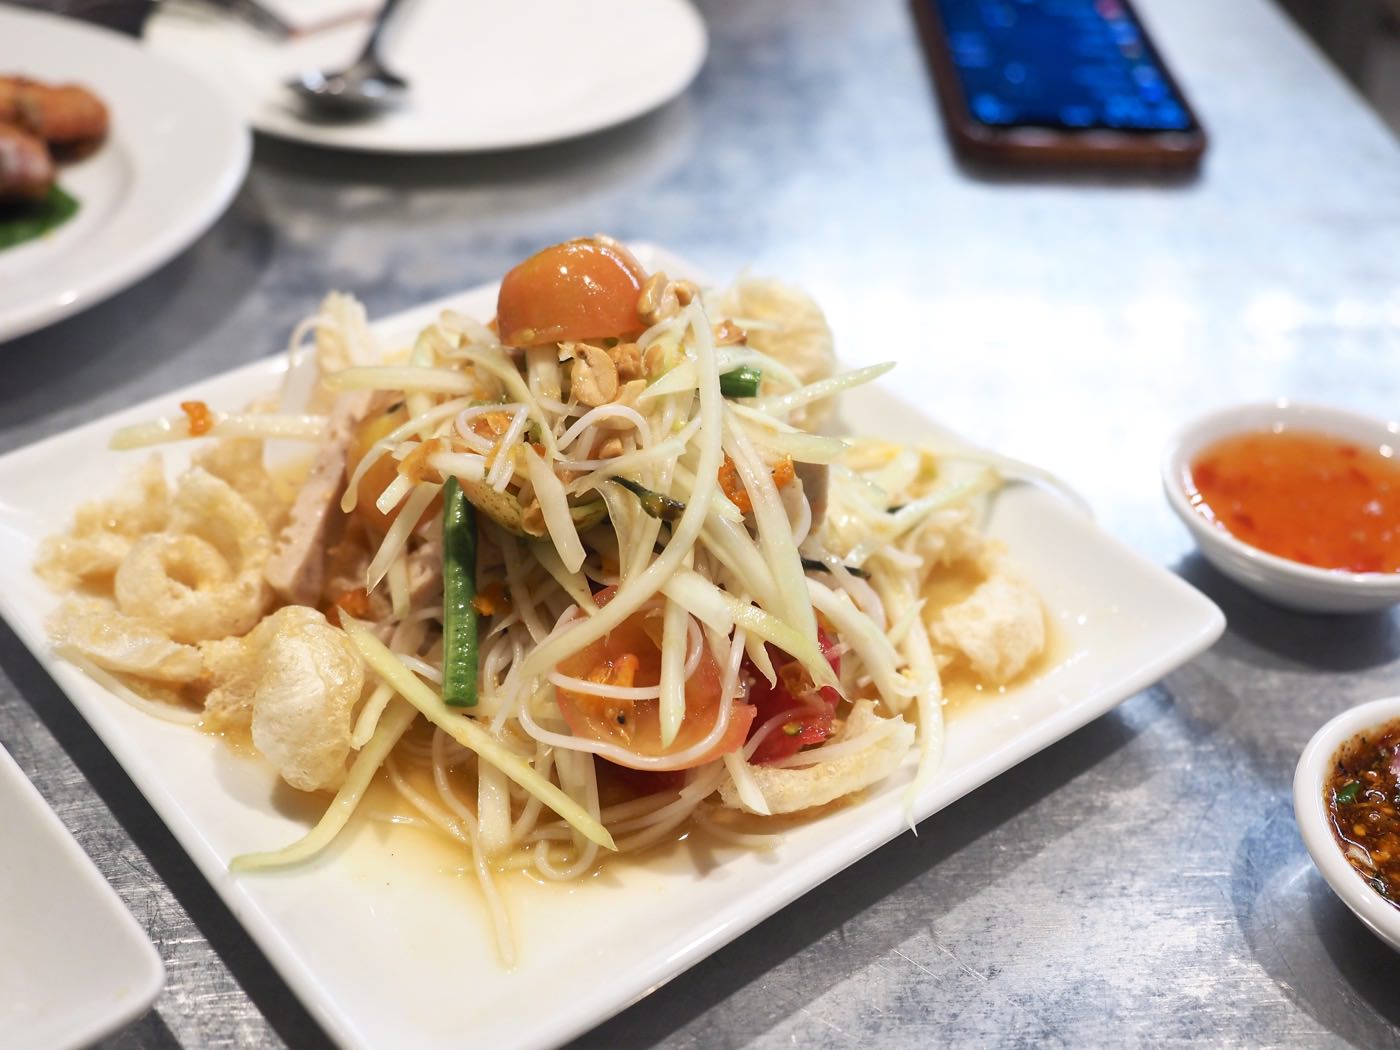 曼谷美食 Som Tam Nua 炸雞與青木瓜沙拉 - 一口冒險 Bitesized Adventure